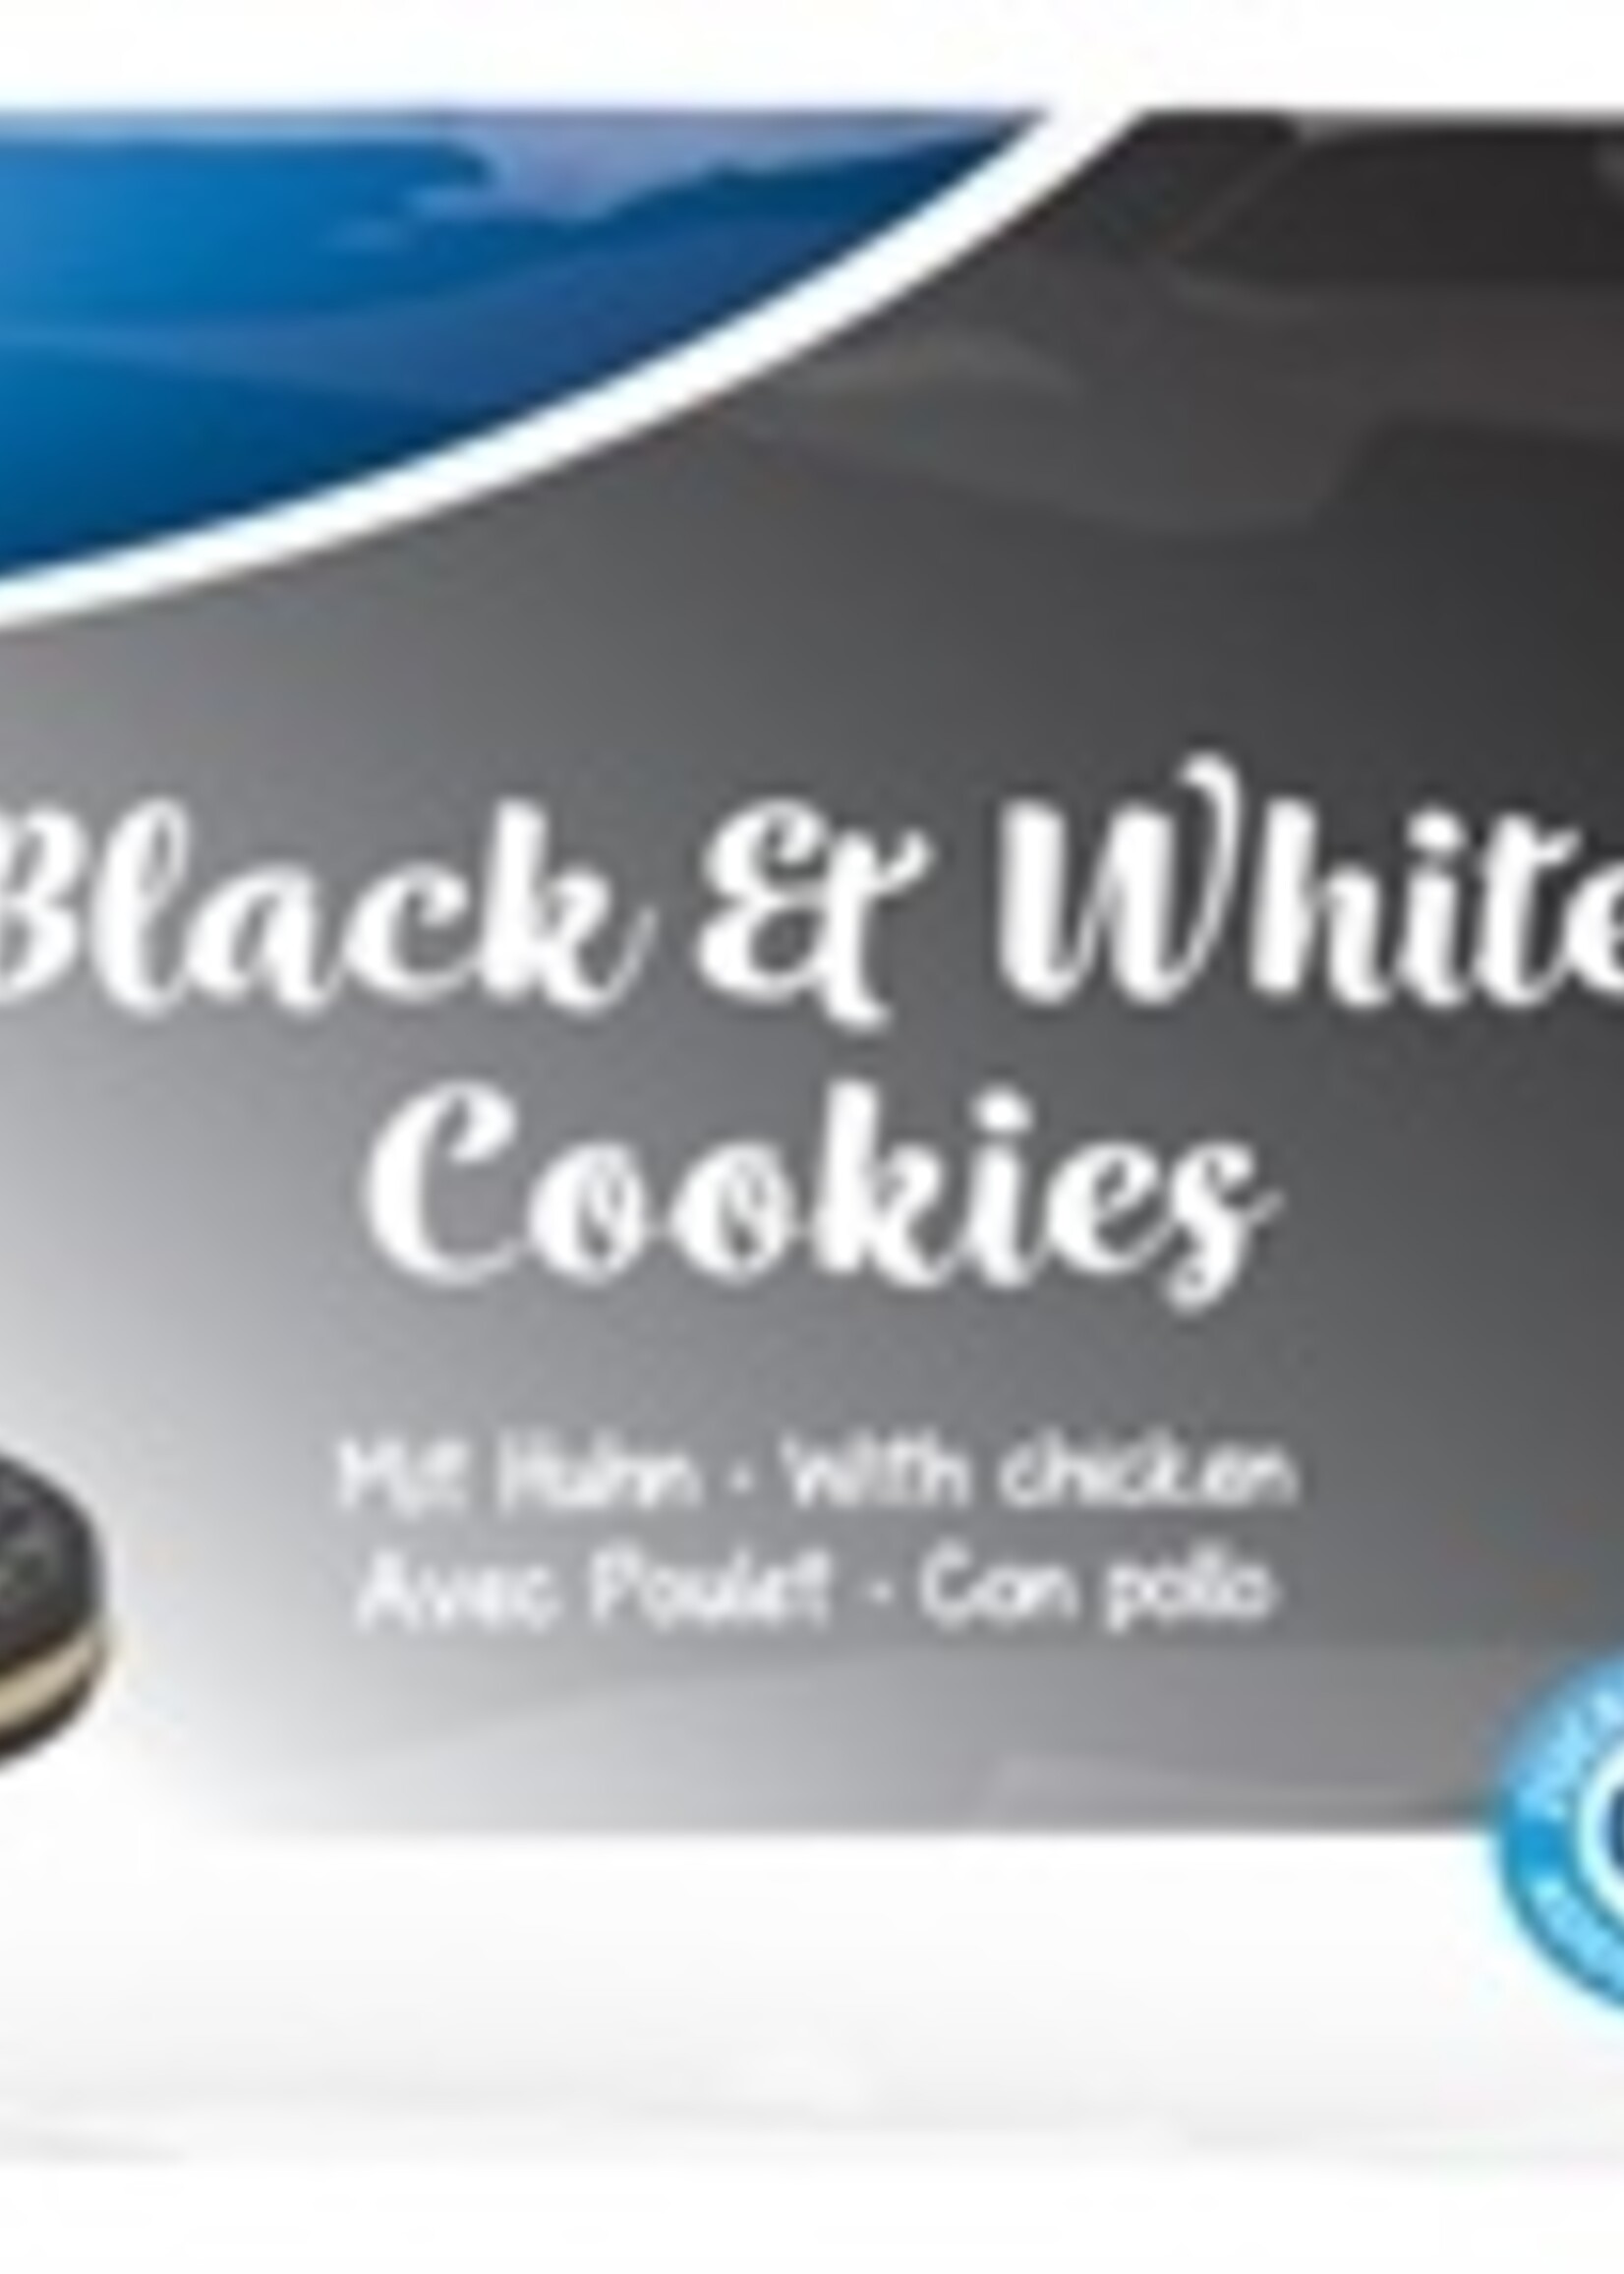 Trixie Trixie black & white cookies